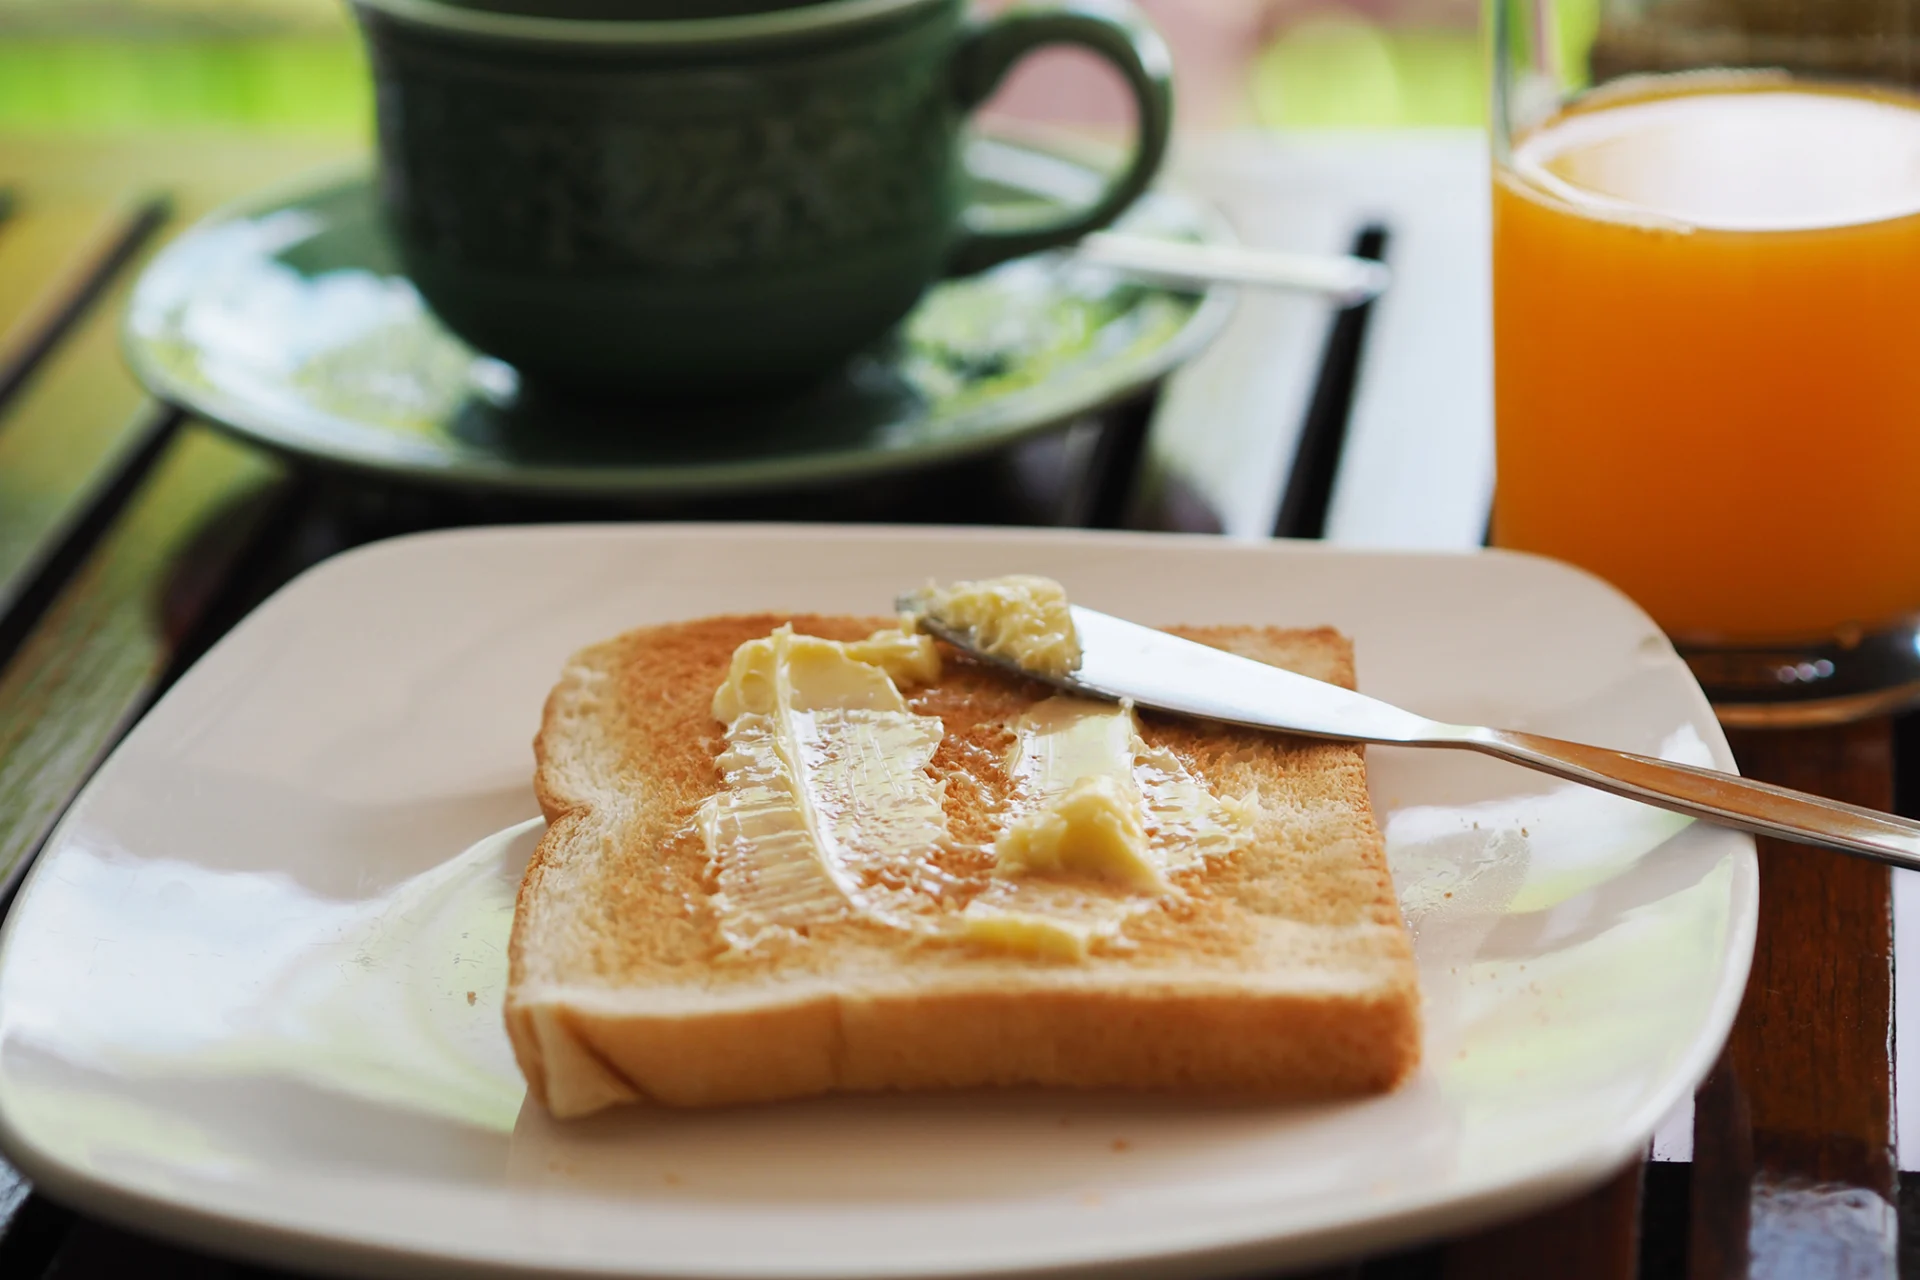 Une tranche de pain toast beurrée sur une assiette. À l’arrière-plan se trouve une tasse avec une boisson chaude et un jus d’orange.